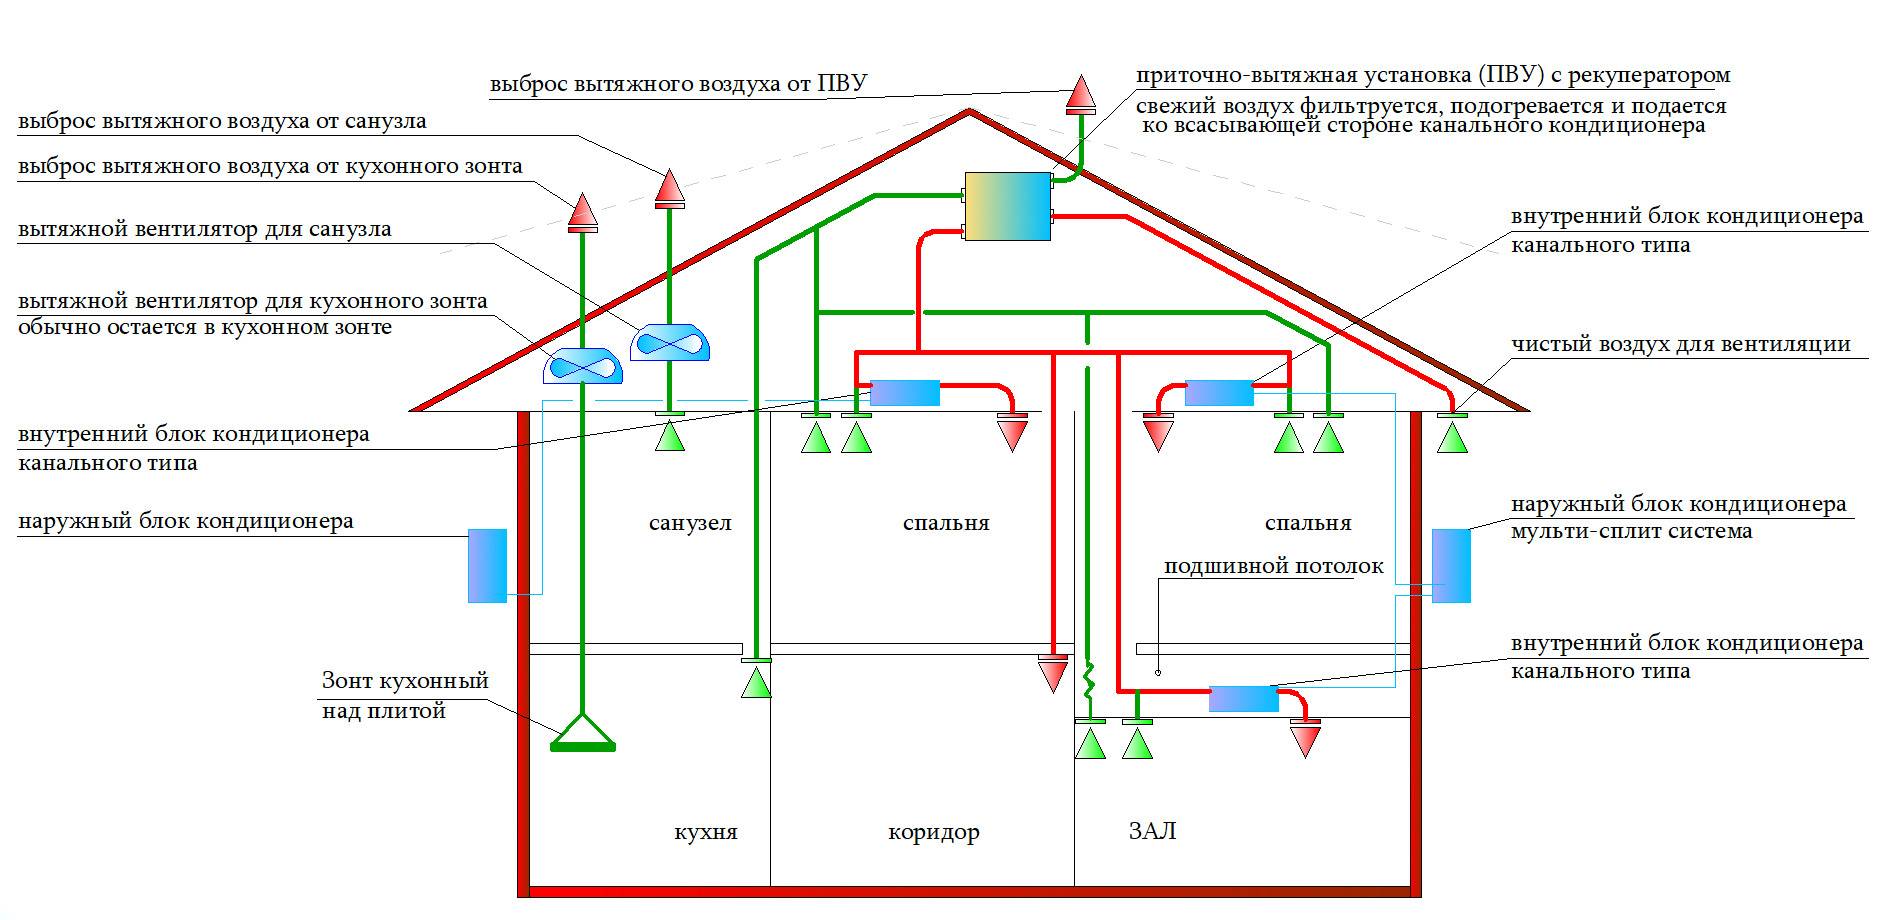 Системы и схемы вентиляции панельных домов